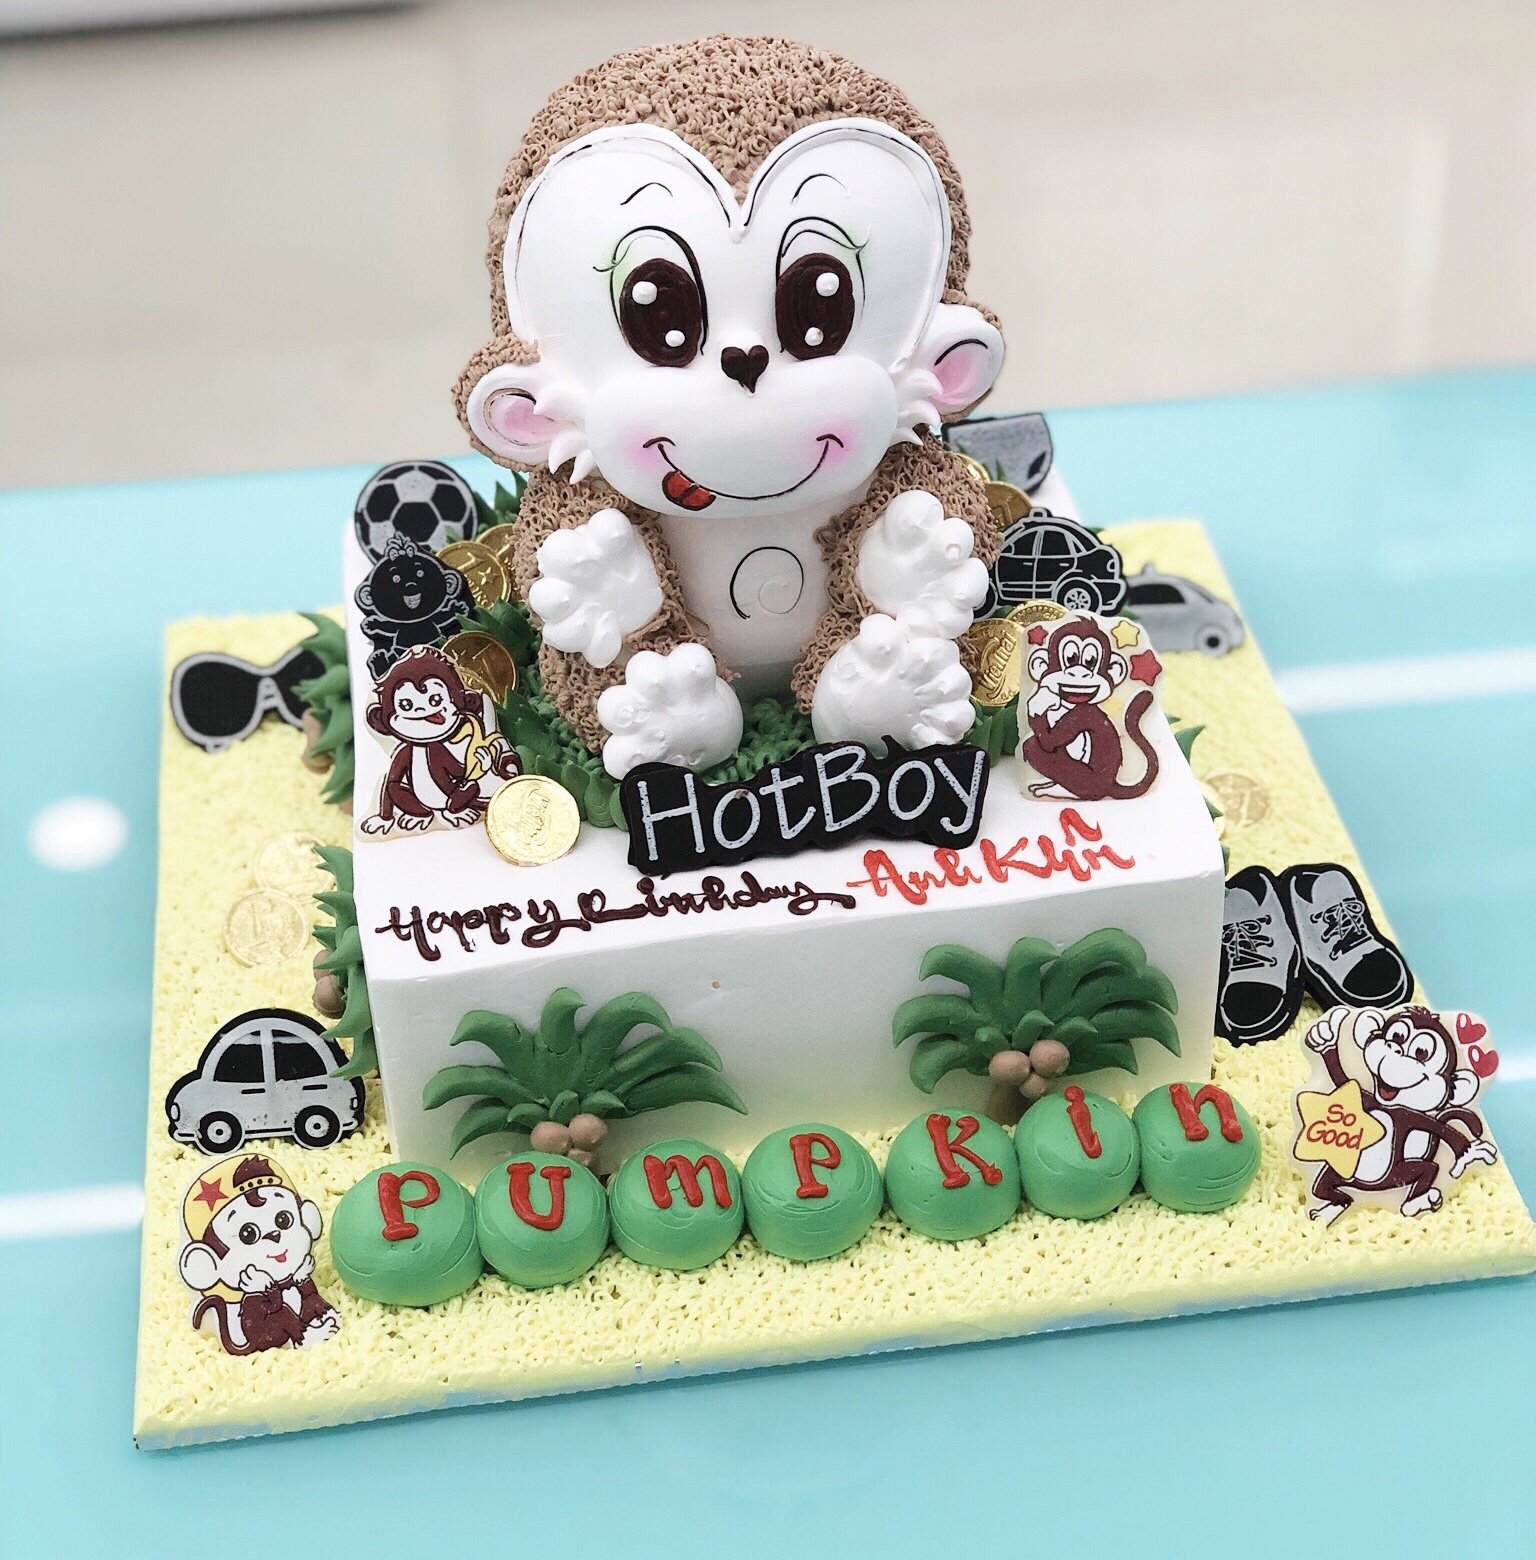 Bánh sinh nhật khỉ con tạo hình ngộ nghĩnh chắc chắn sẽ làm cho bữa tiệc sinh nhật của bạn trở nên tuyệt vời hơn. Hãy cùng xem các loại bánh khỉ nhé.